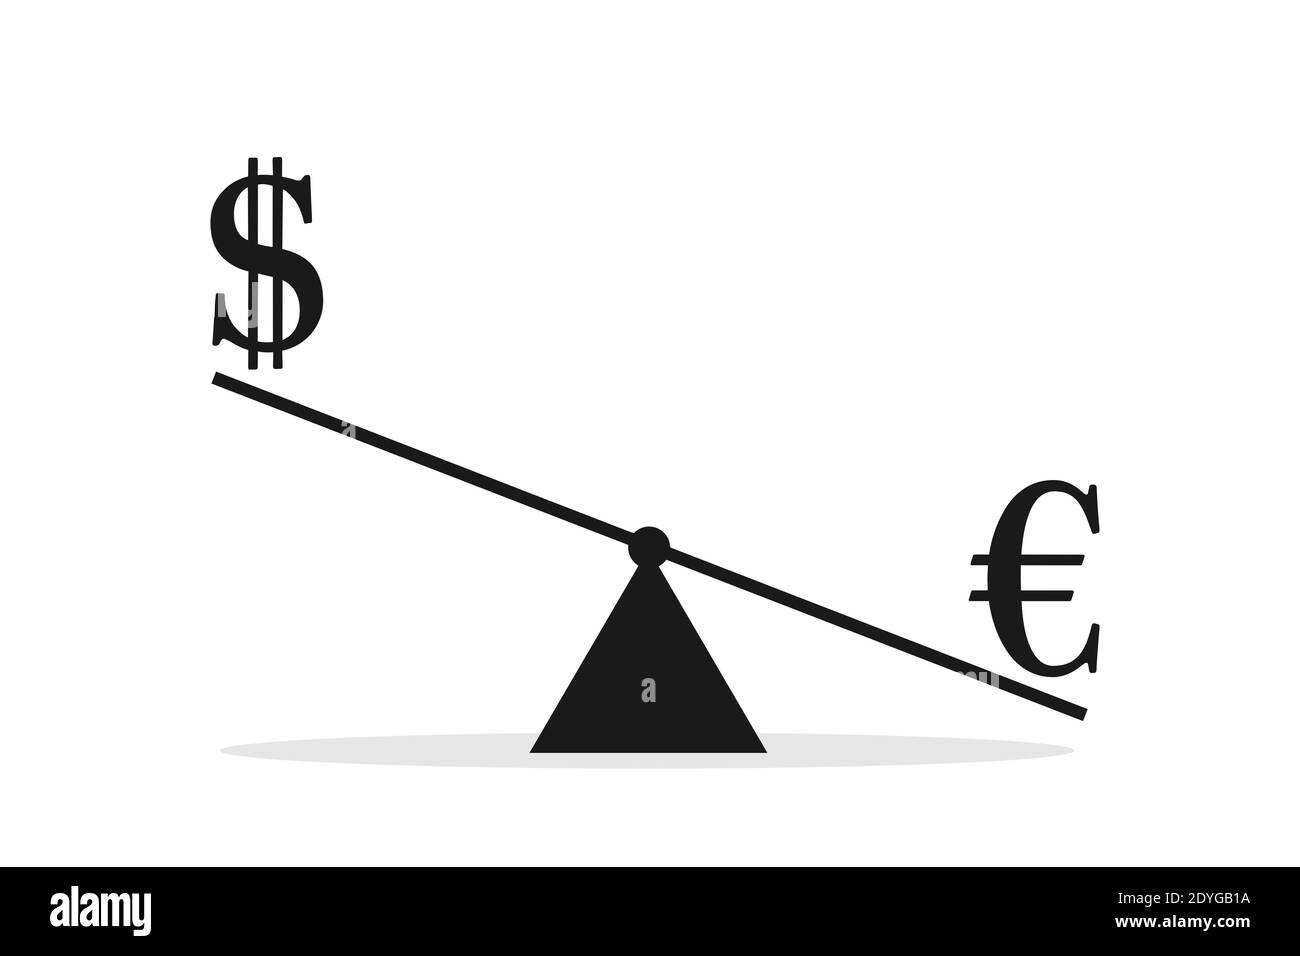 El dólar ESTADOUNIDENSE y el euro se comparan en peso y escala. Comparación del valor y valoración de la moneda. Ilustración vectorial aislada sobre blanco. Foto de stock